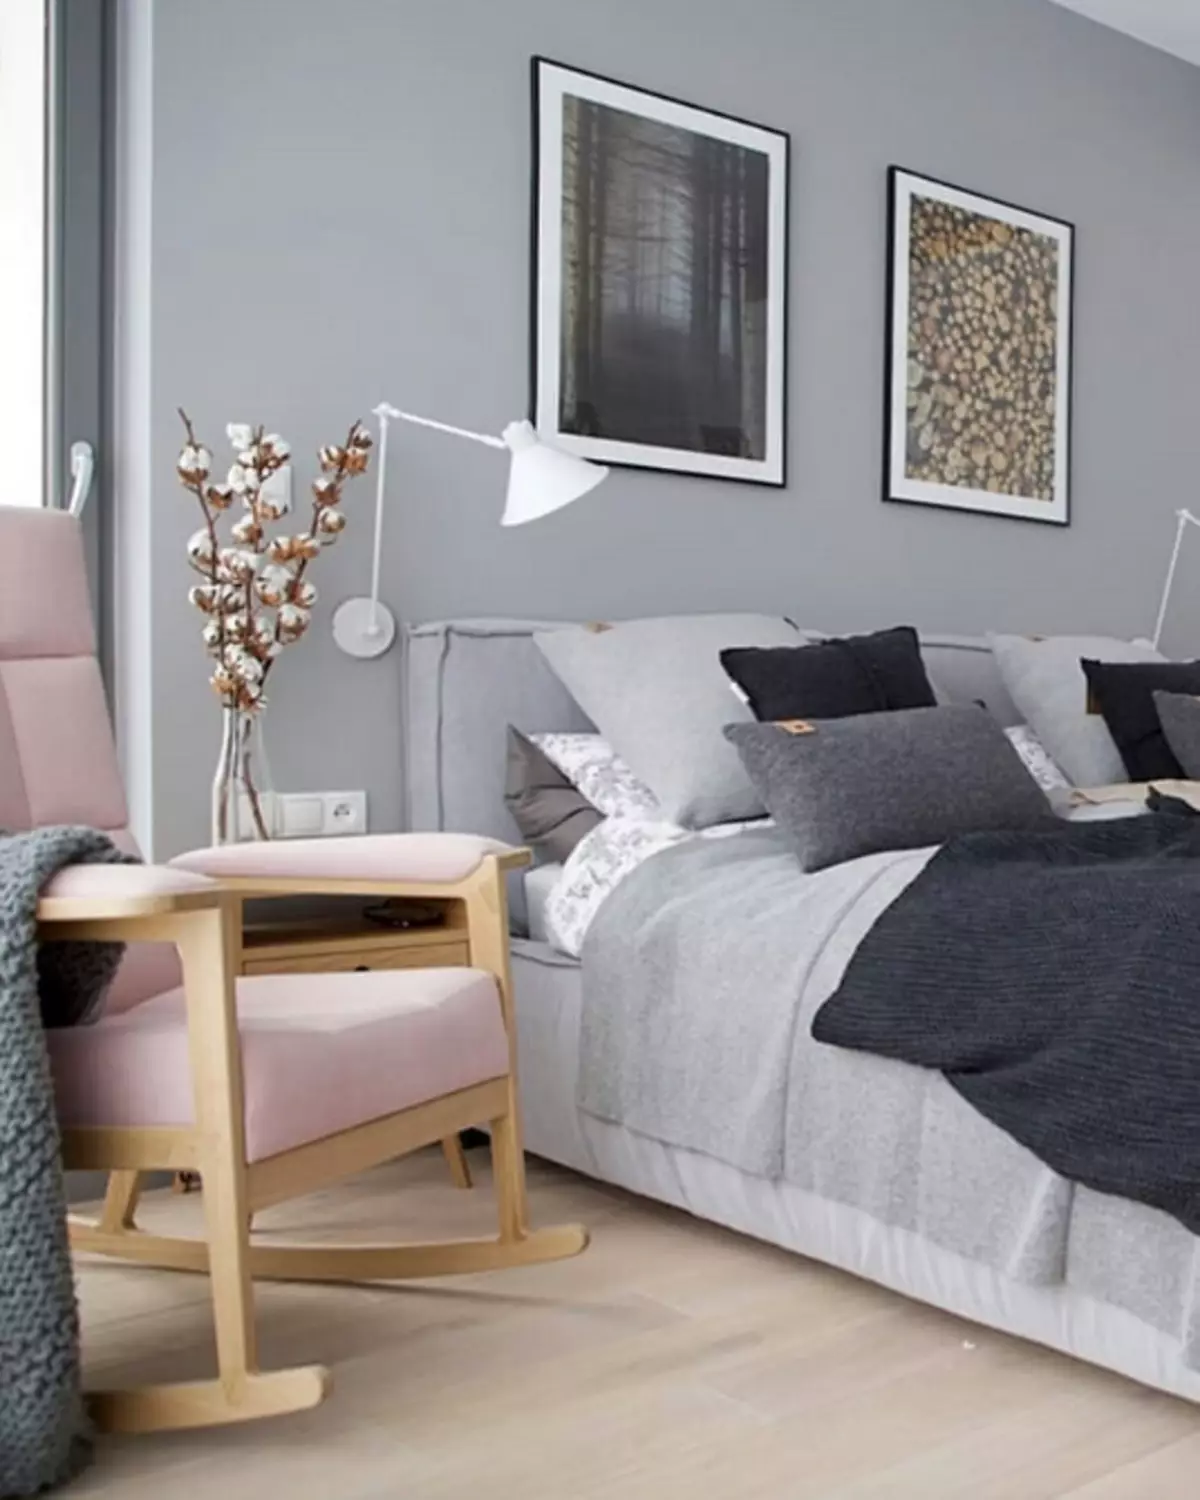 Skandinavisk stil i sovrummet interiör: 50 vackra exempel 9947_65